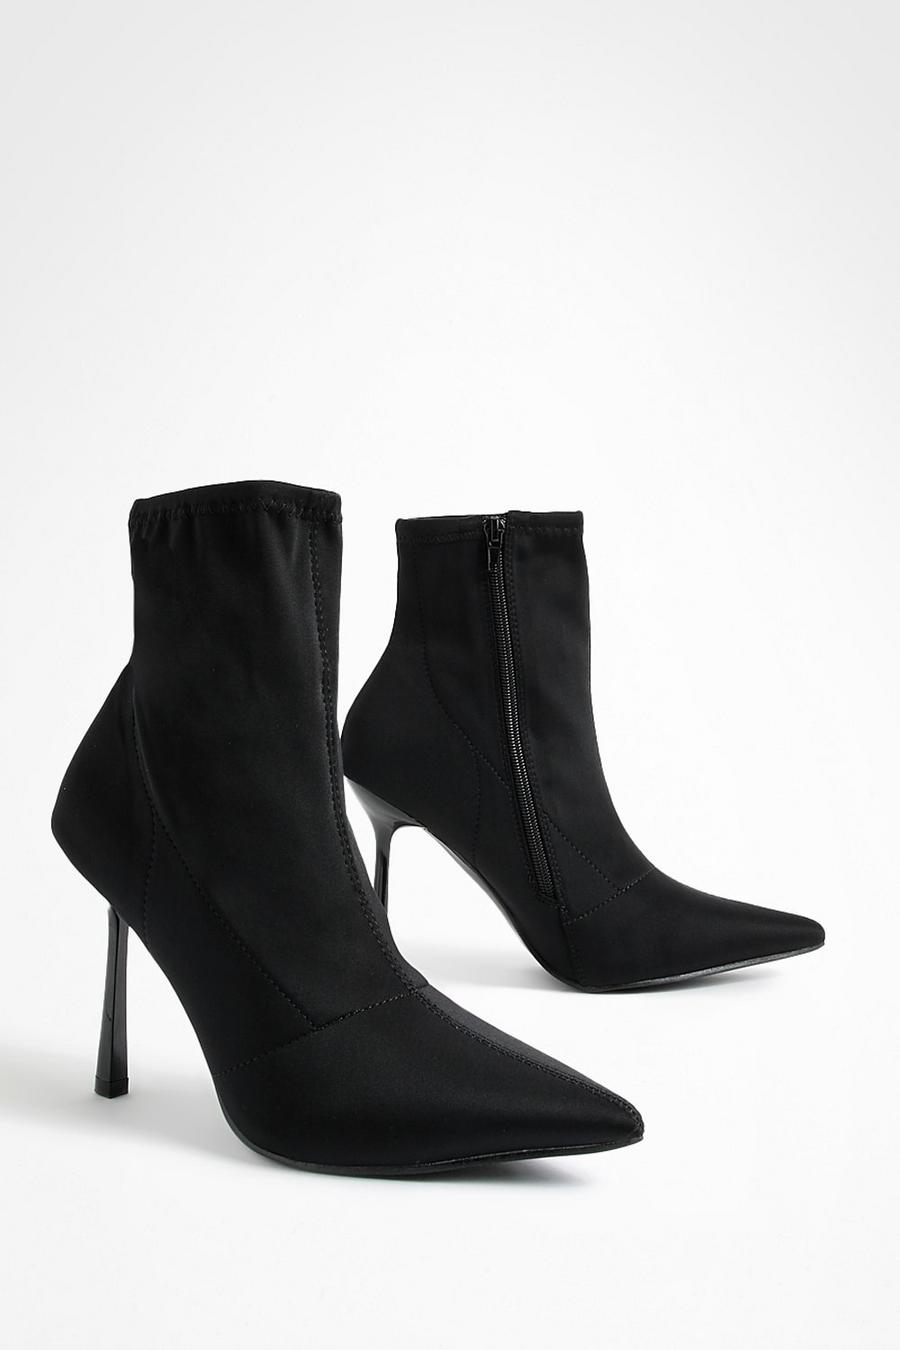 Schwarze Neopren Socken-Stiefel mit Stiletto-Absatz, Black schwarz